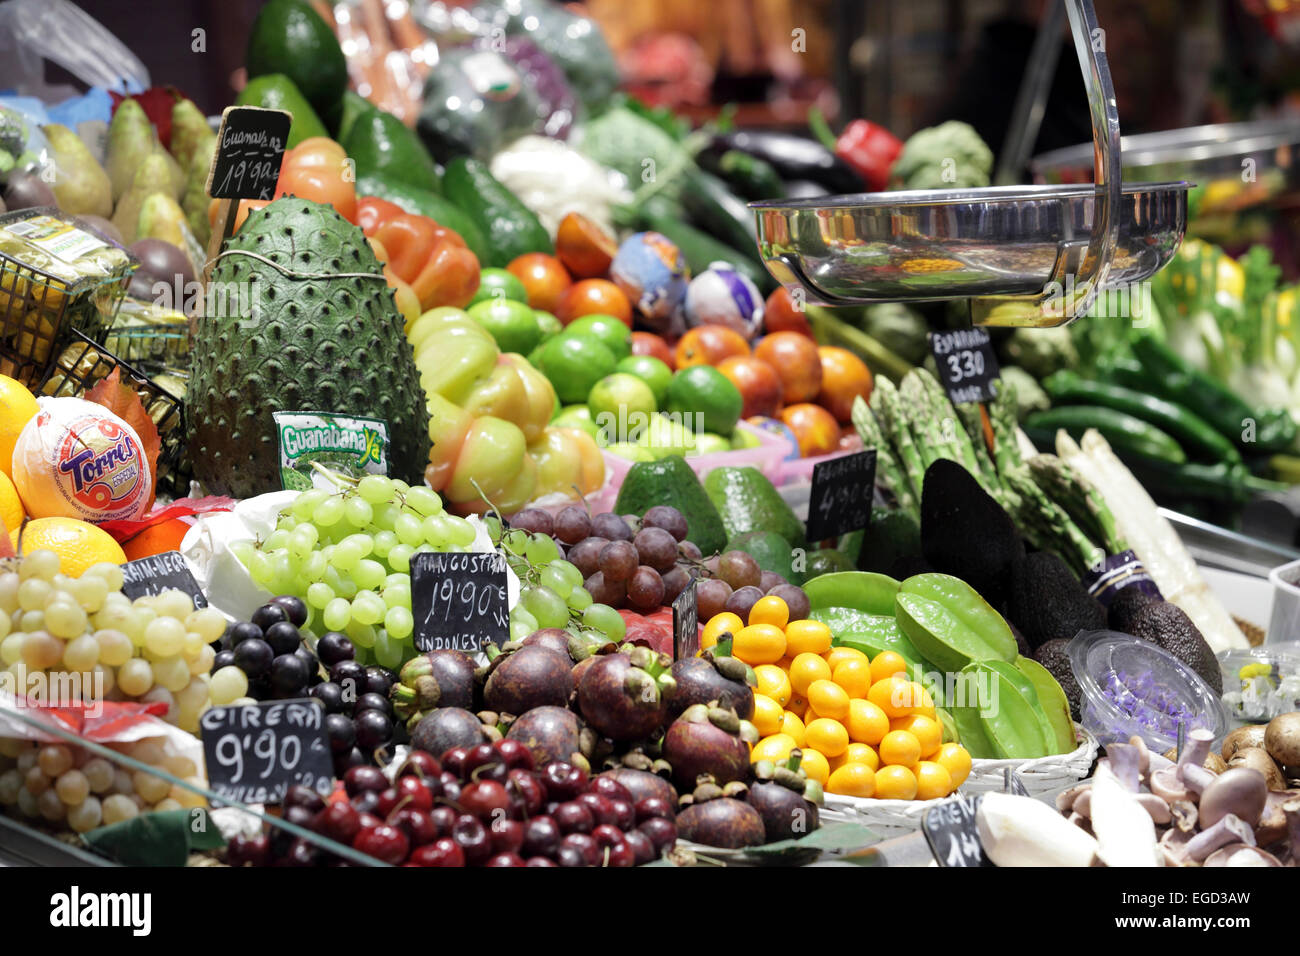 Couleurs vives des fruits exotiques à vendre, marché de la Boqueria, La Rambla, Barcelone, Espagne Banque D'Images